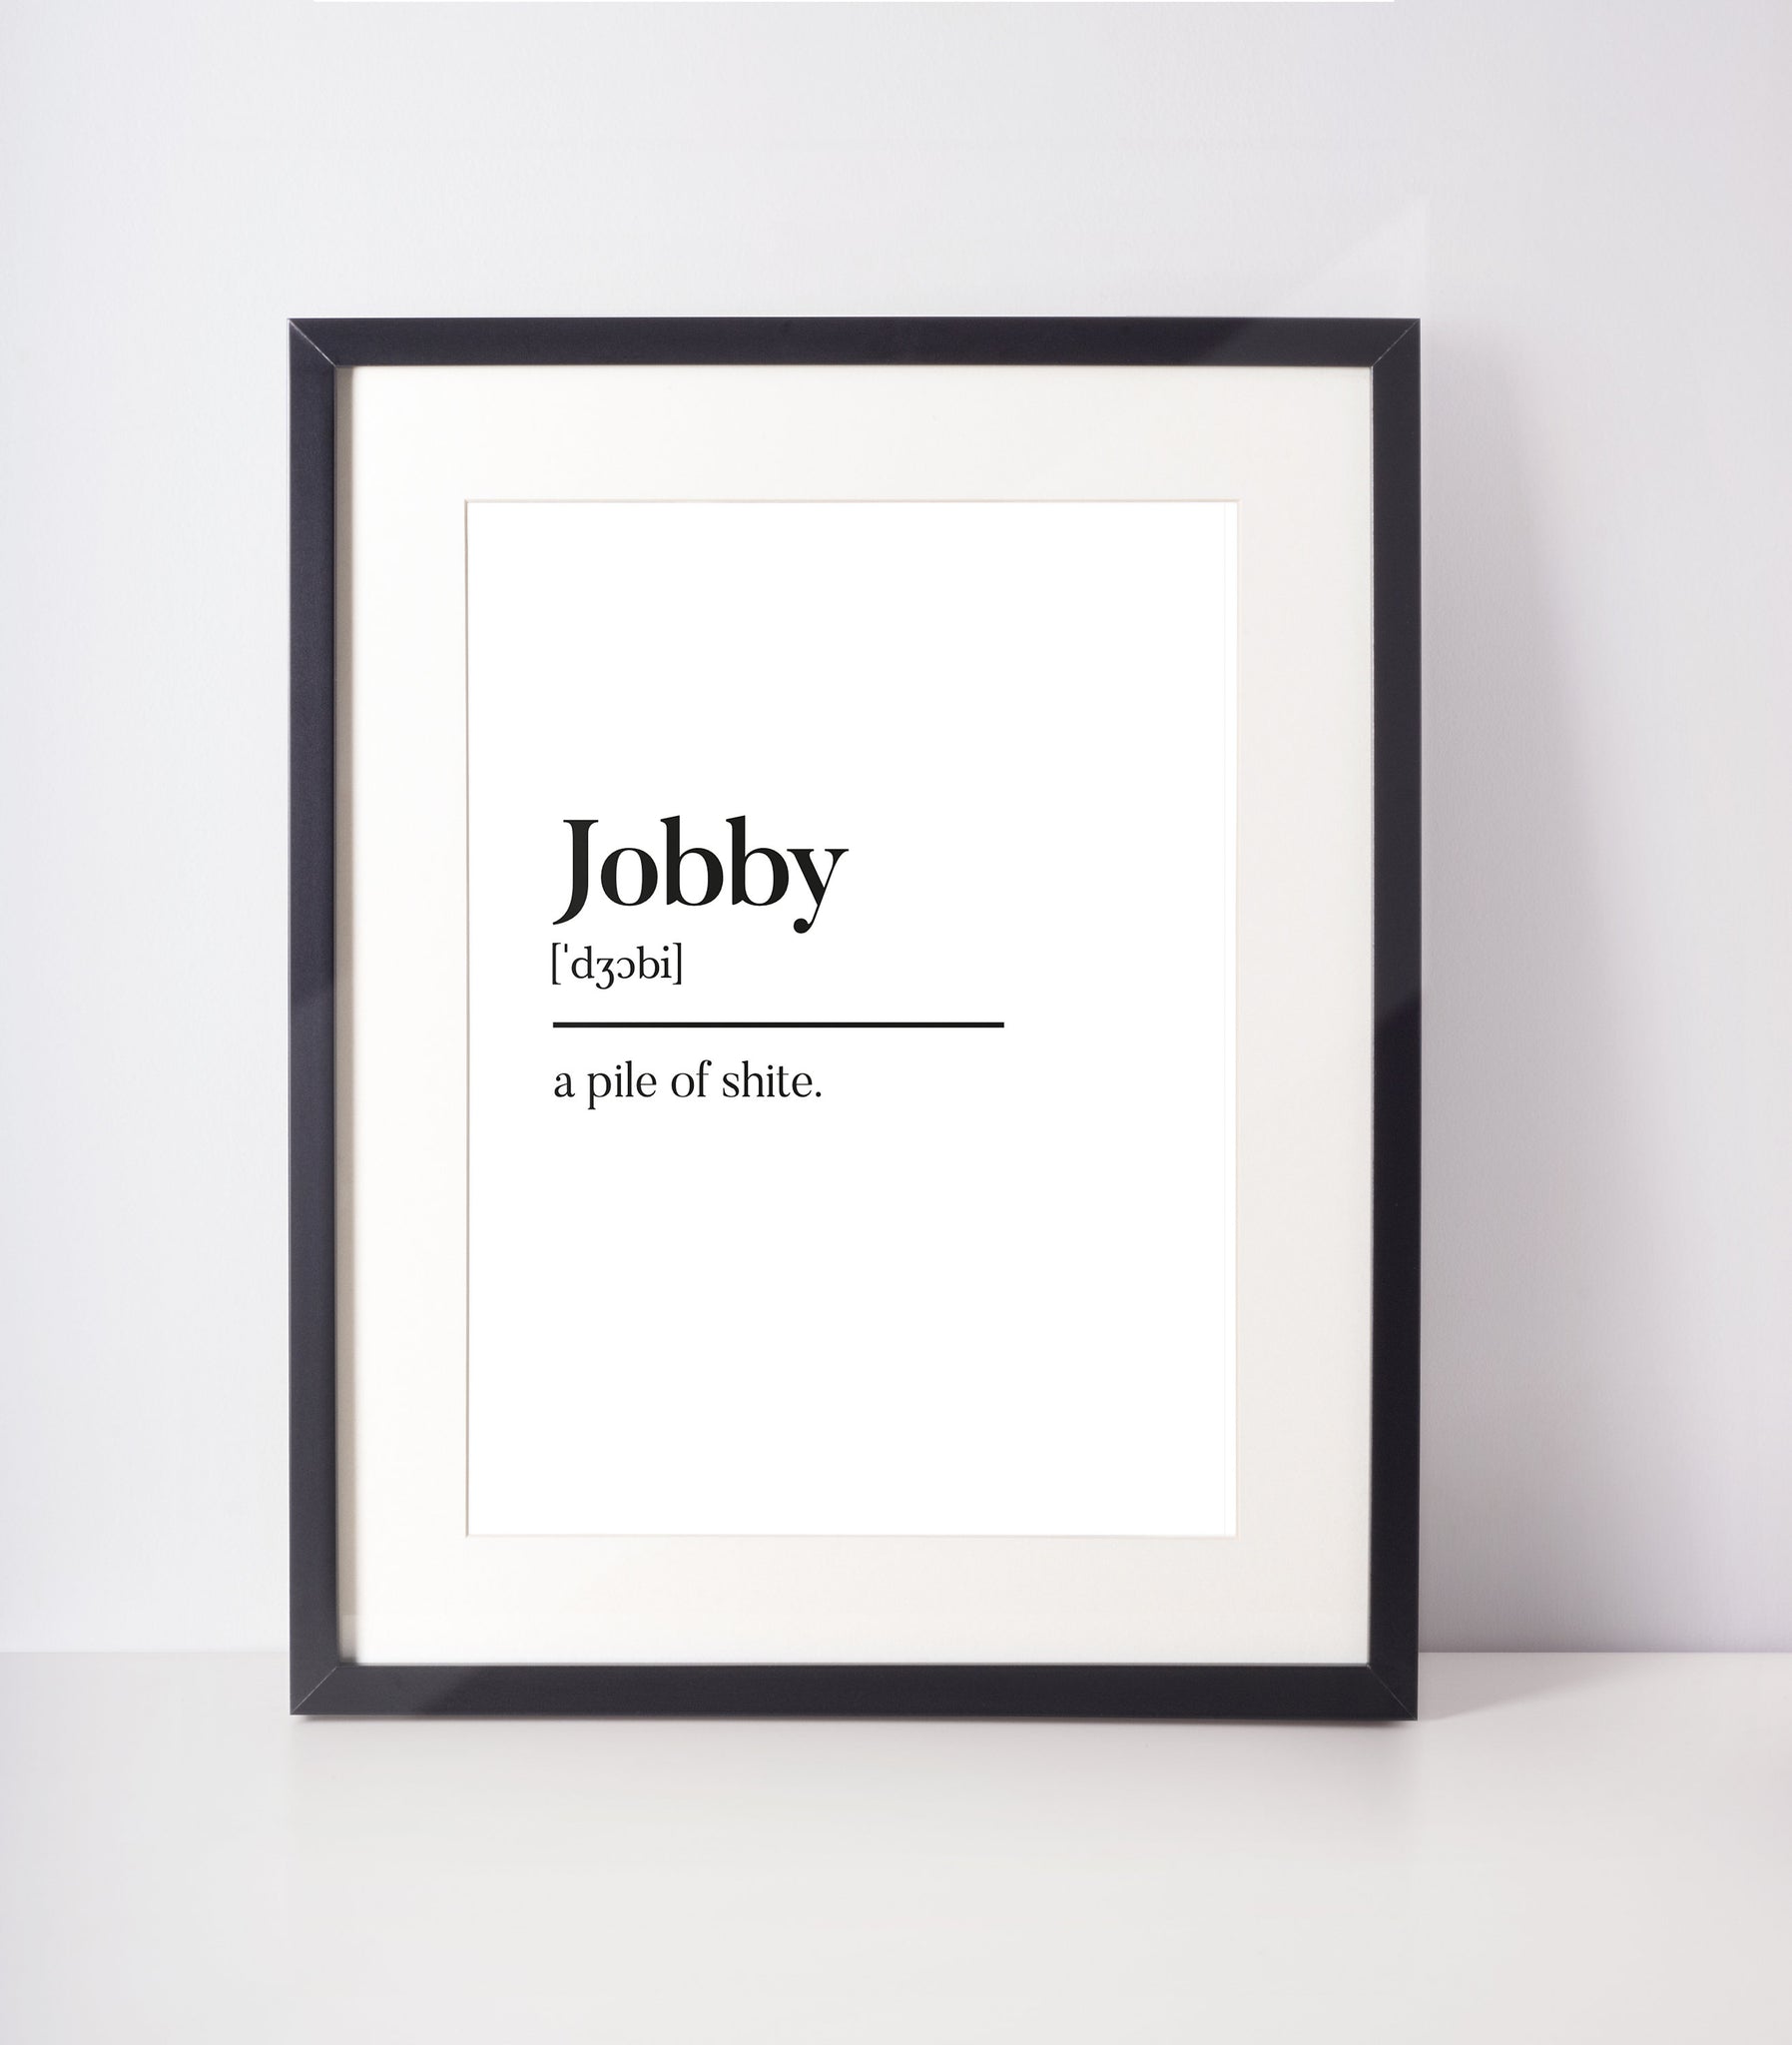 Jobby Scottish Slang Definition Unframed Print